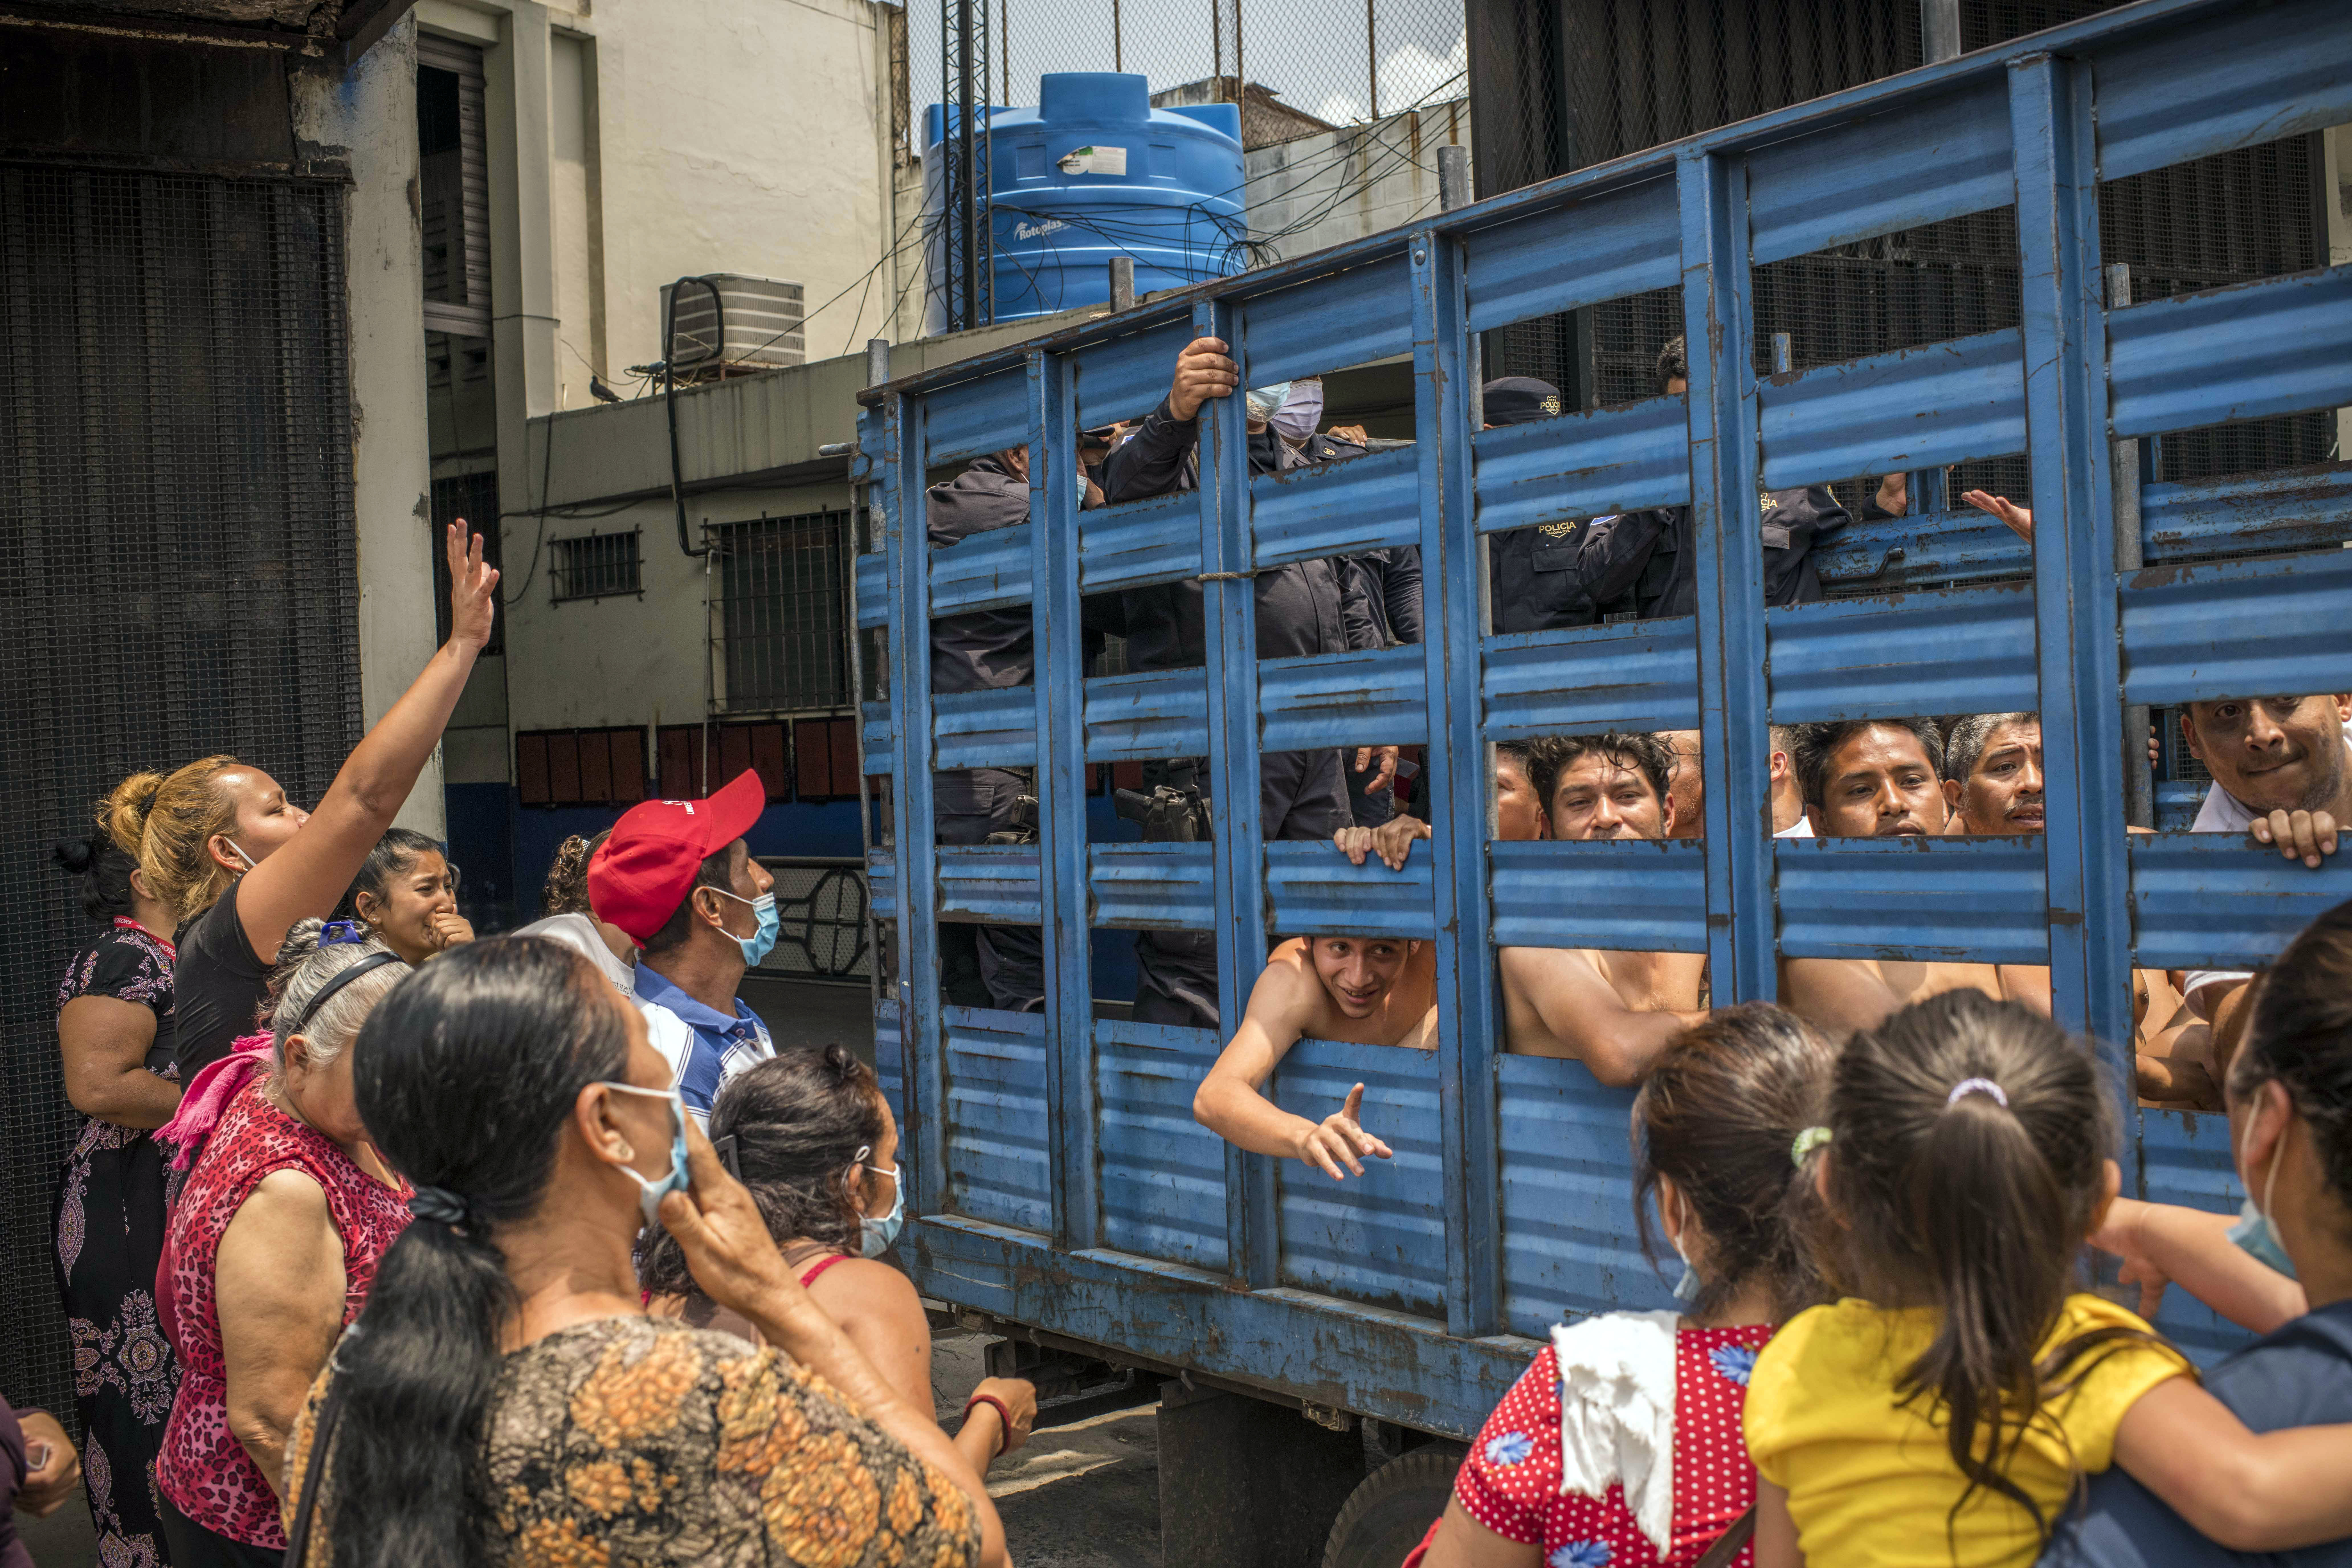 Familiares de reclusos observan cómo son trasladados de El Penalito a otro centro penitenciario en San Salvador el 17 de abril de 2022. (Foto Prensa Libre: Daniele Volpe/The New York Times)